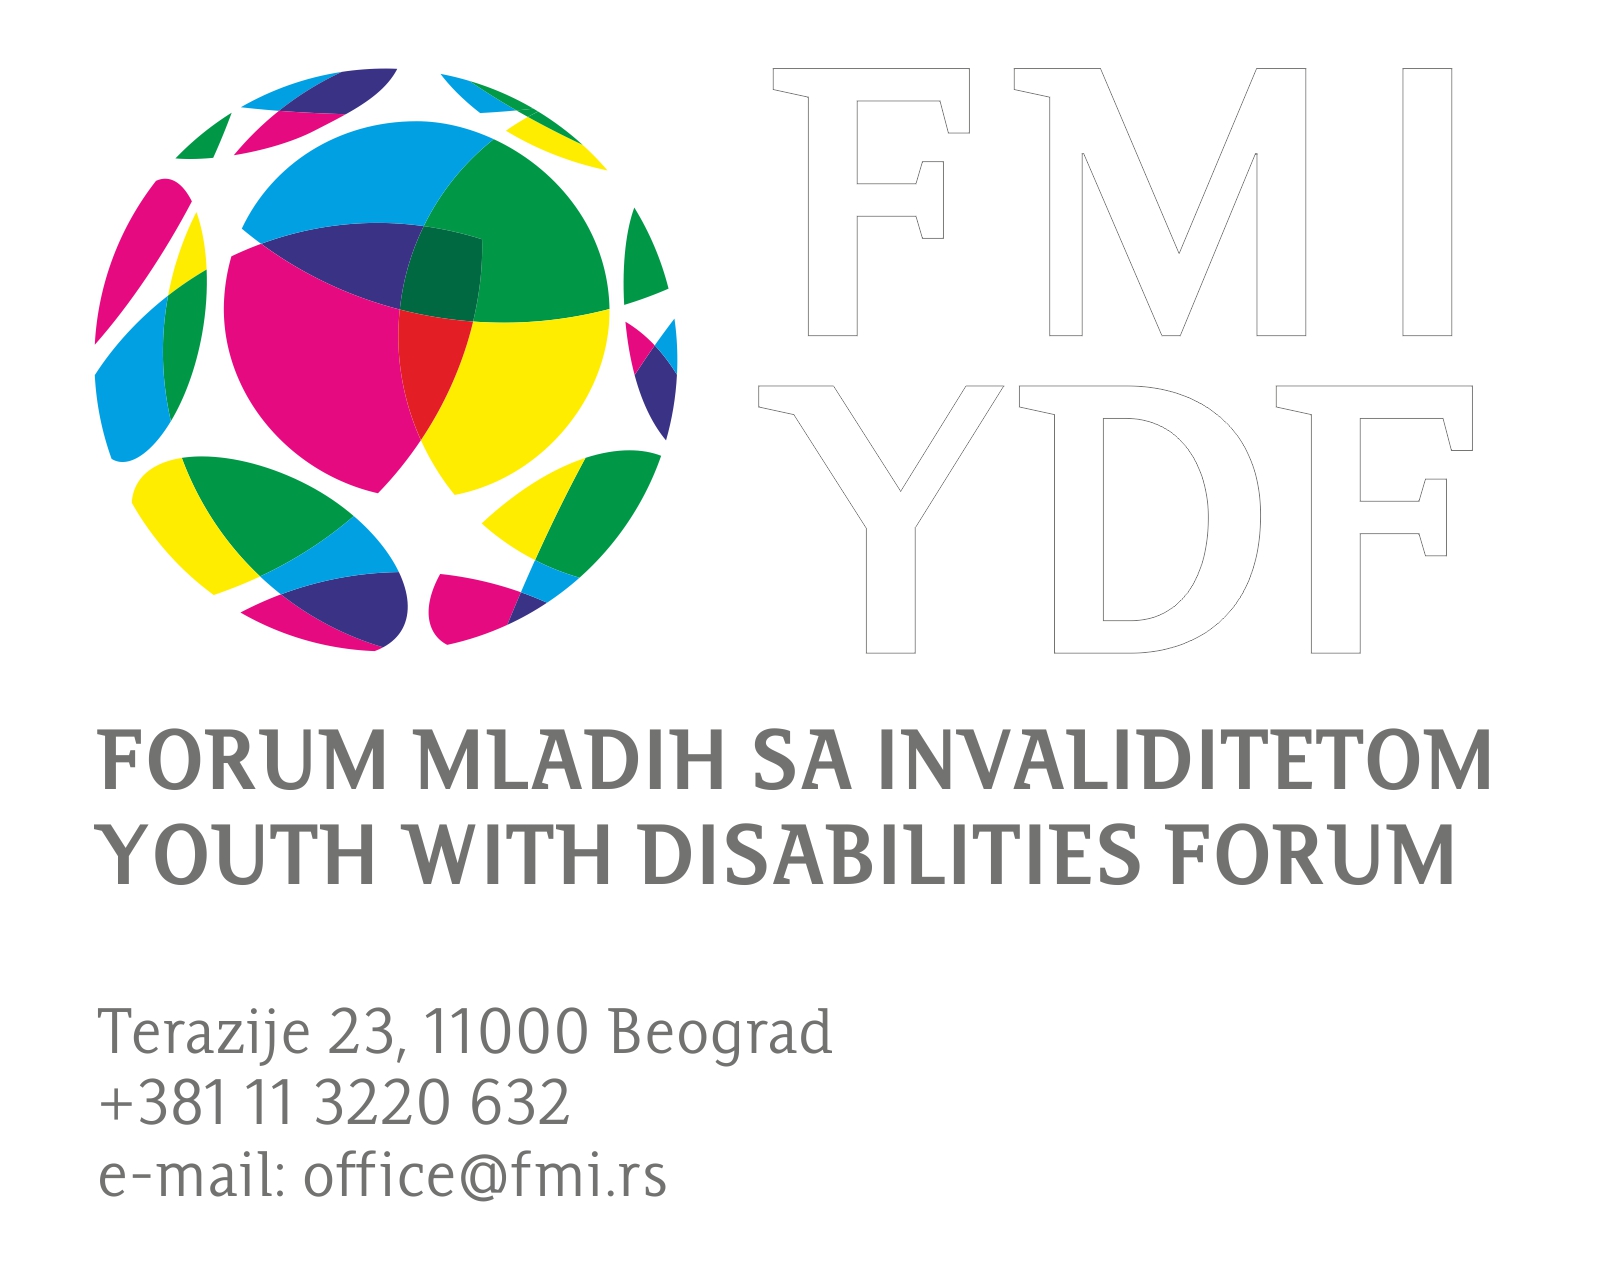 Forum mladih sa invaliditetom razvio sajt o pravima osoba sa invaliditetom u različitim oblastima